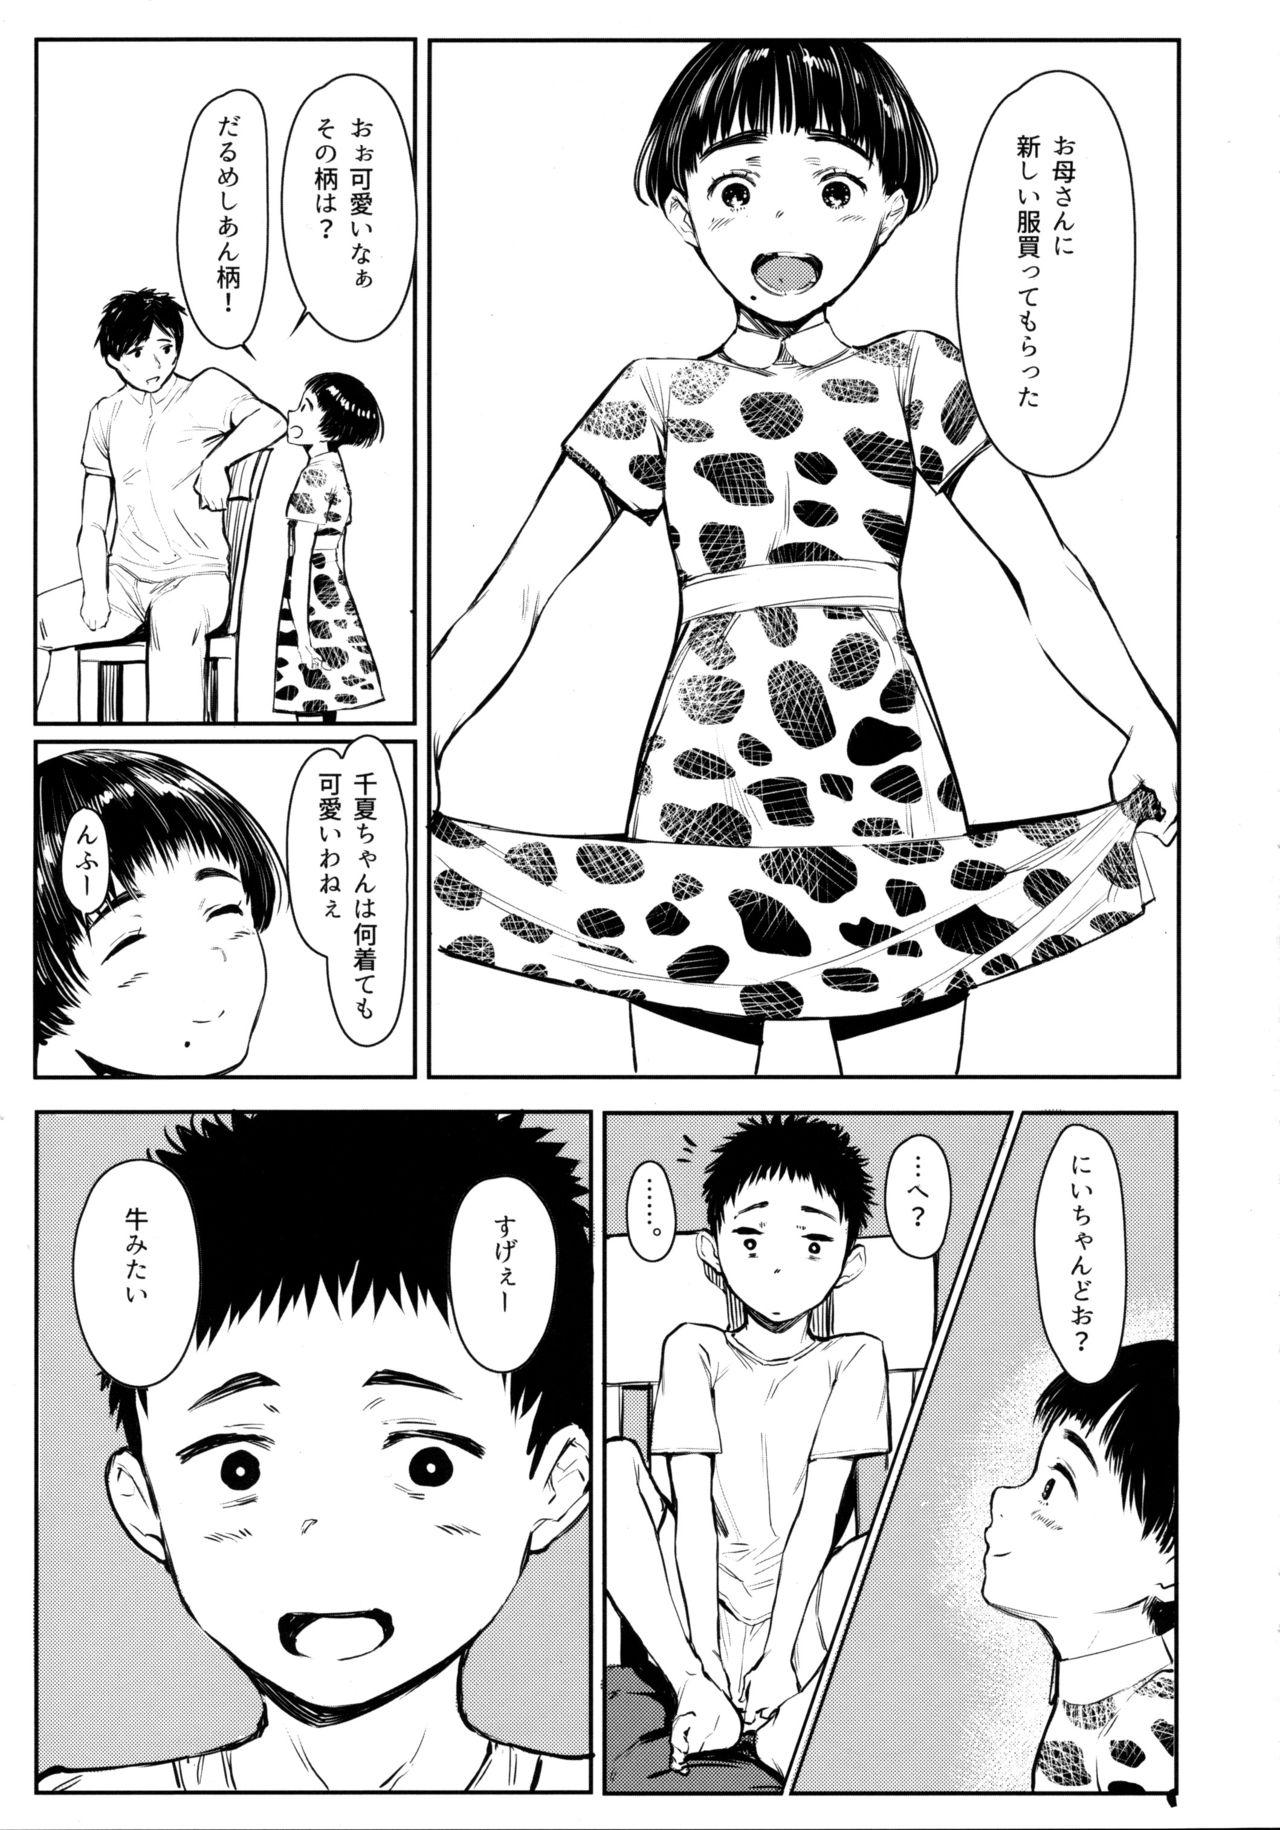 Dancing Tonari no Chinatsu-chan R 05 - Original Muslim - Page 6